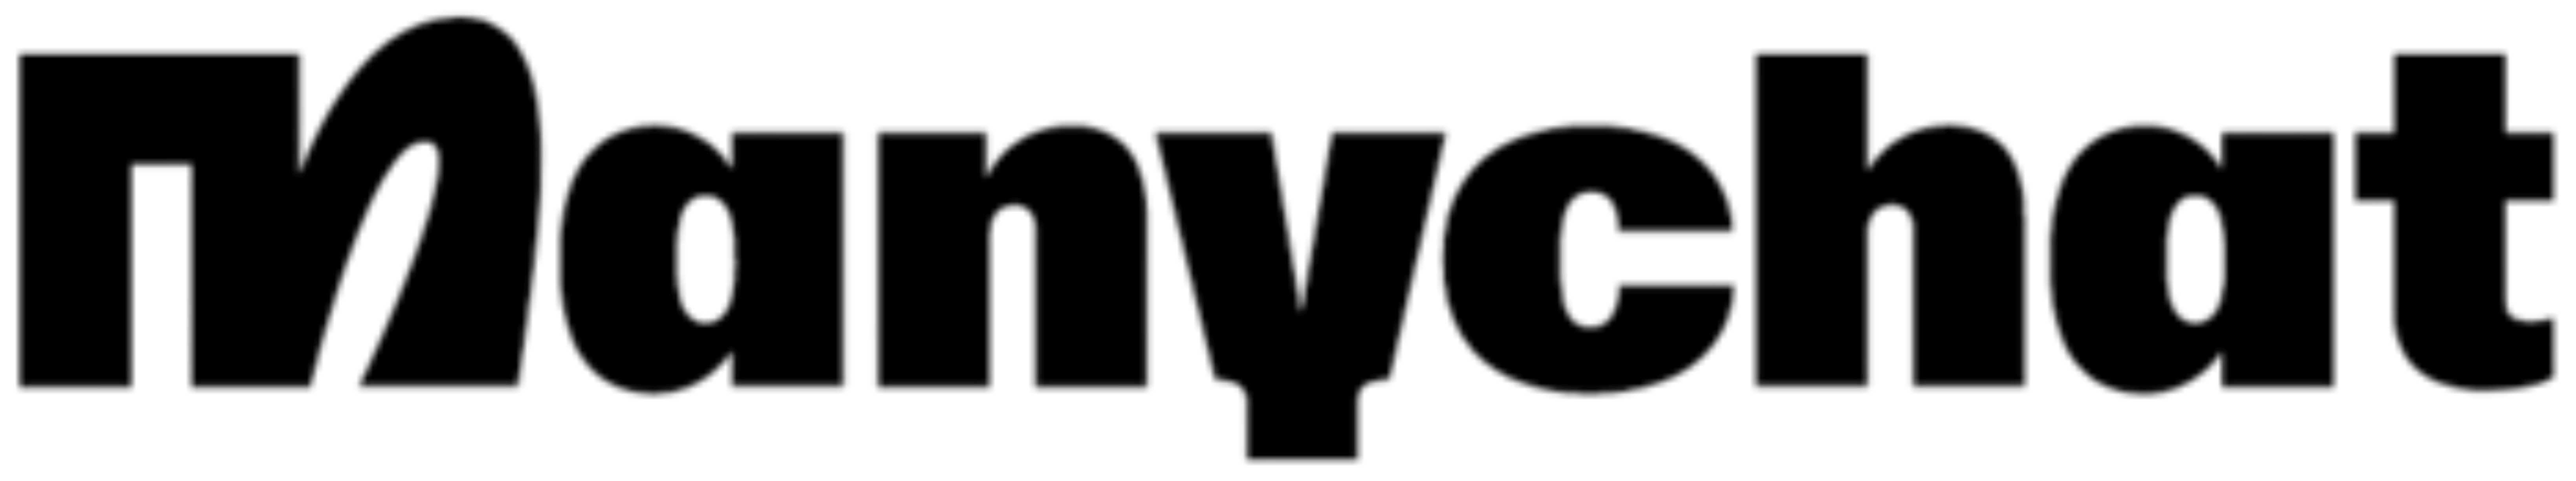 manychat logo